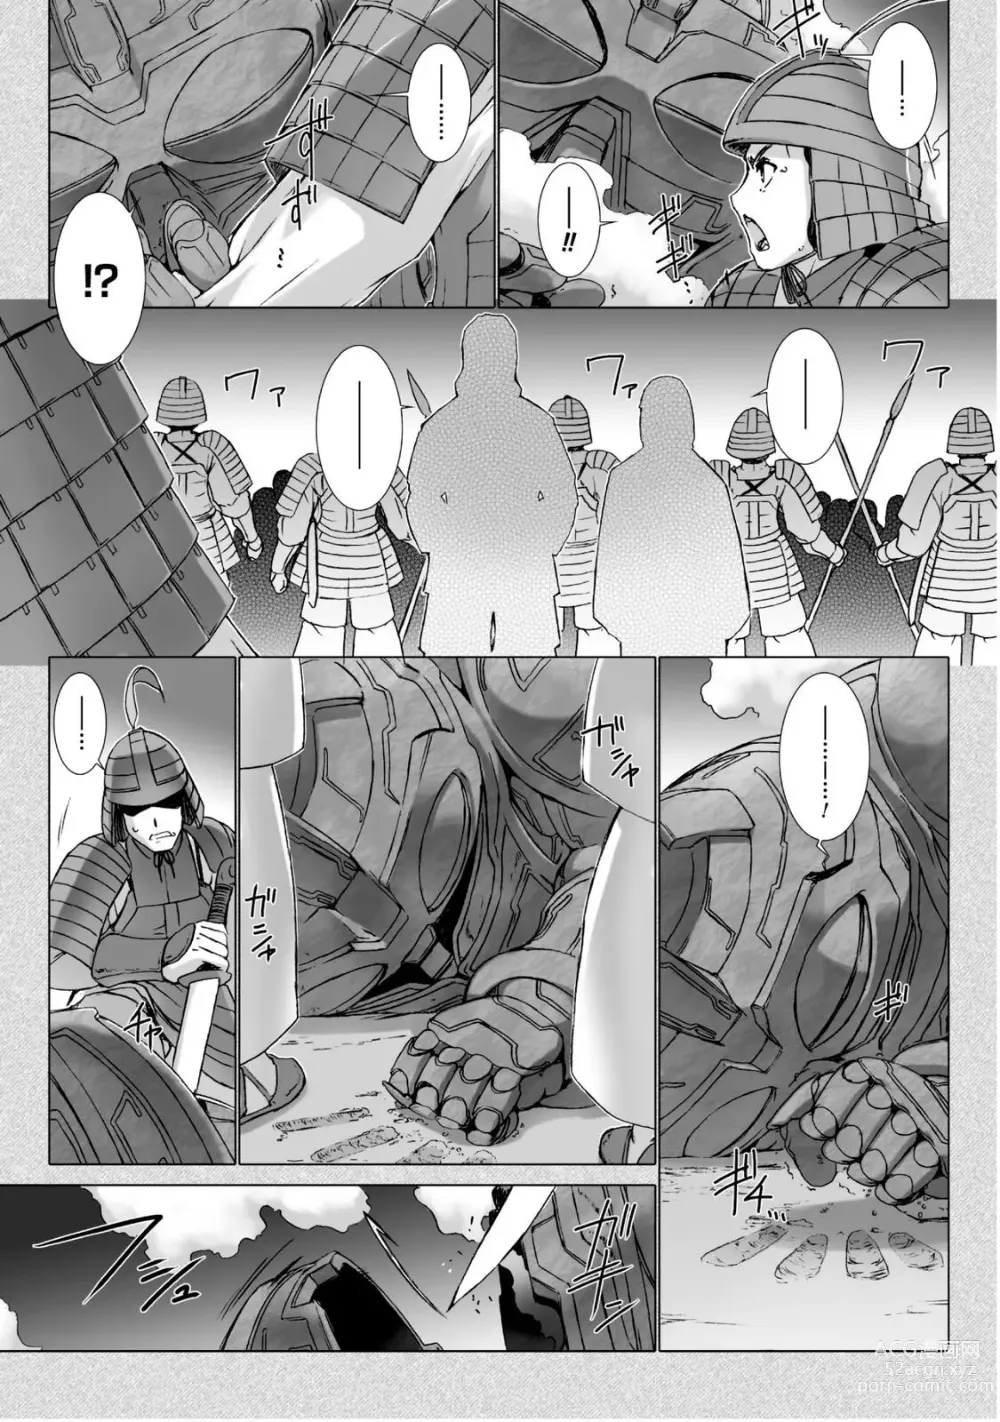 Page 186 of manga Ziggurat 5